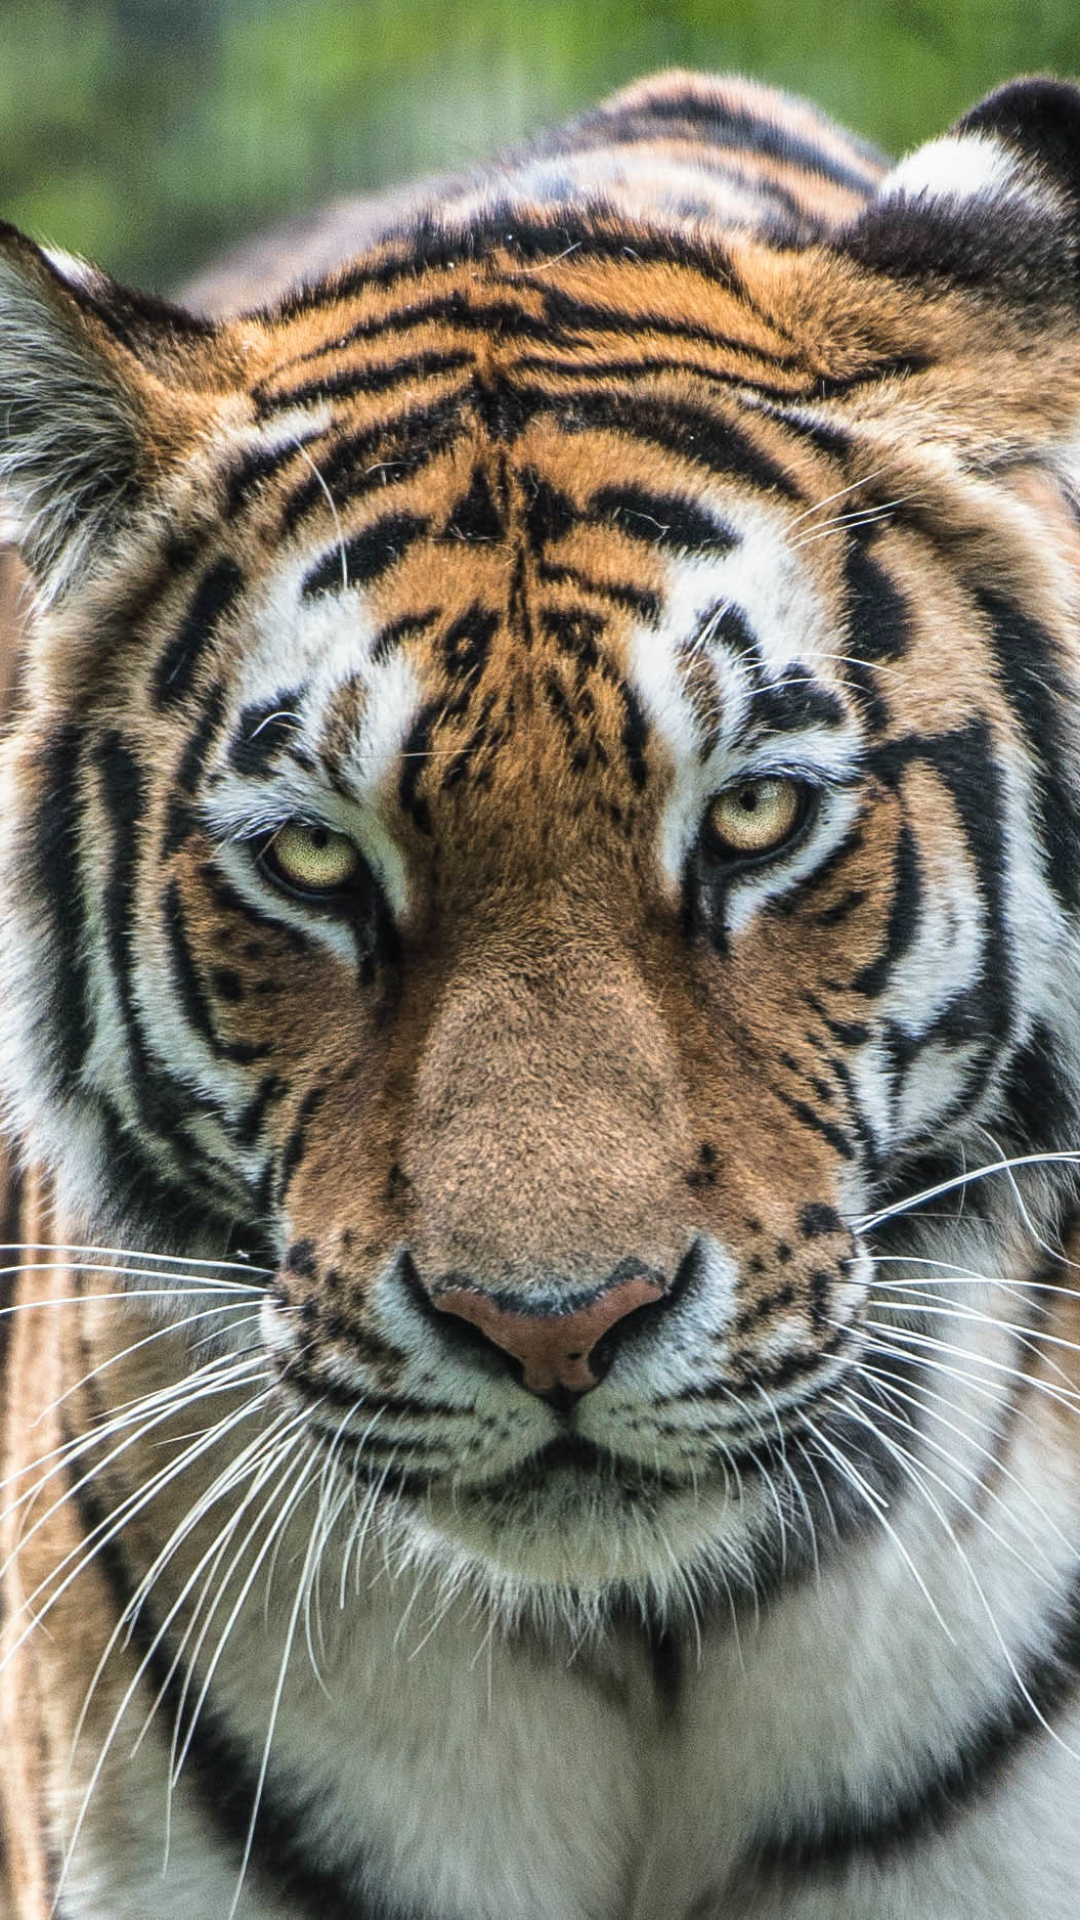 amur tiger, animal, tiger, close up, cats